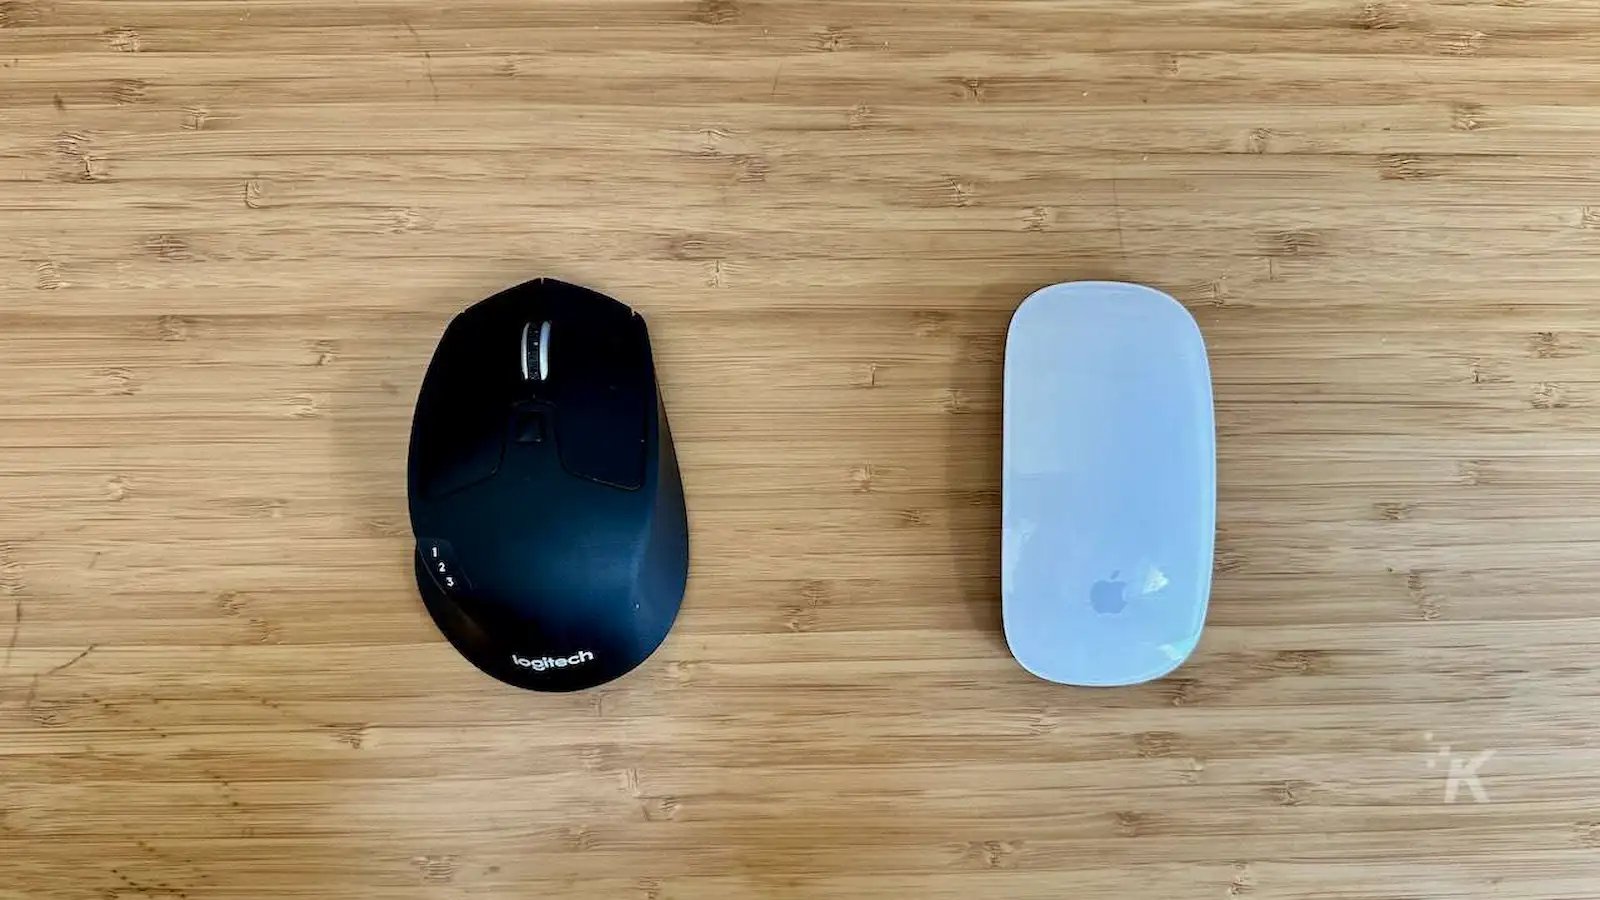 mouse logitech vs apple magic mouse di meja kantor